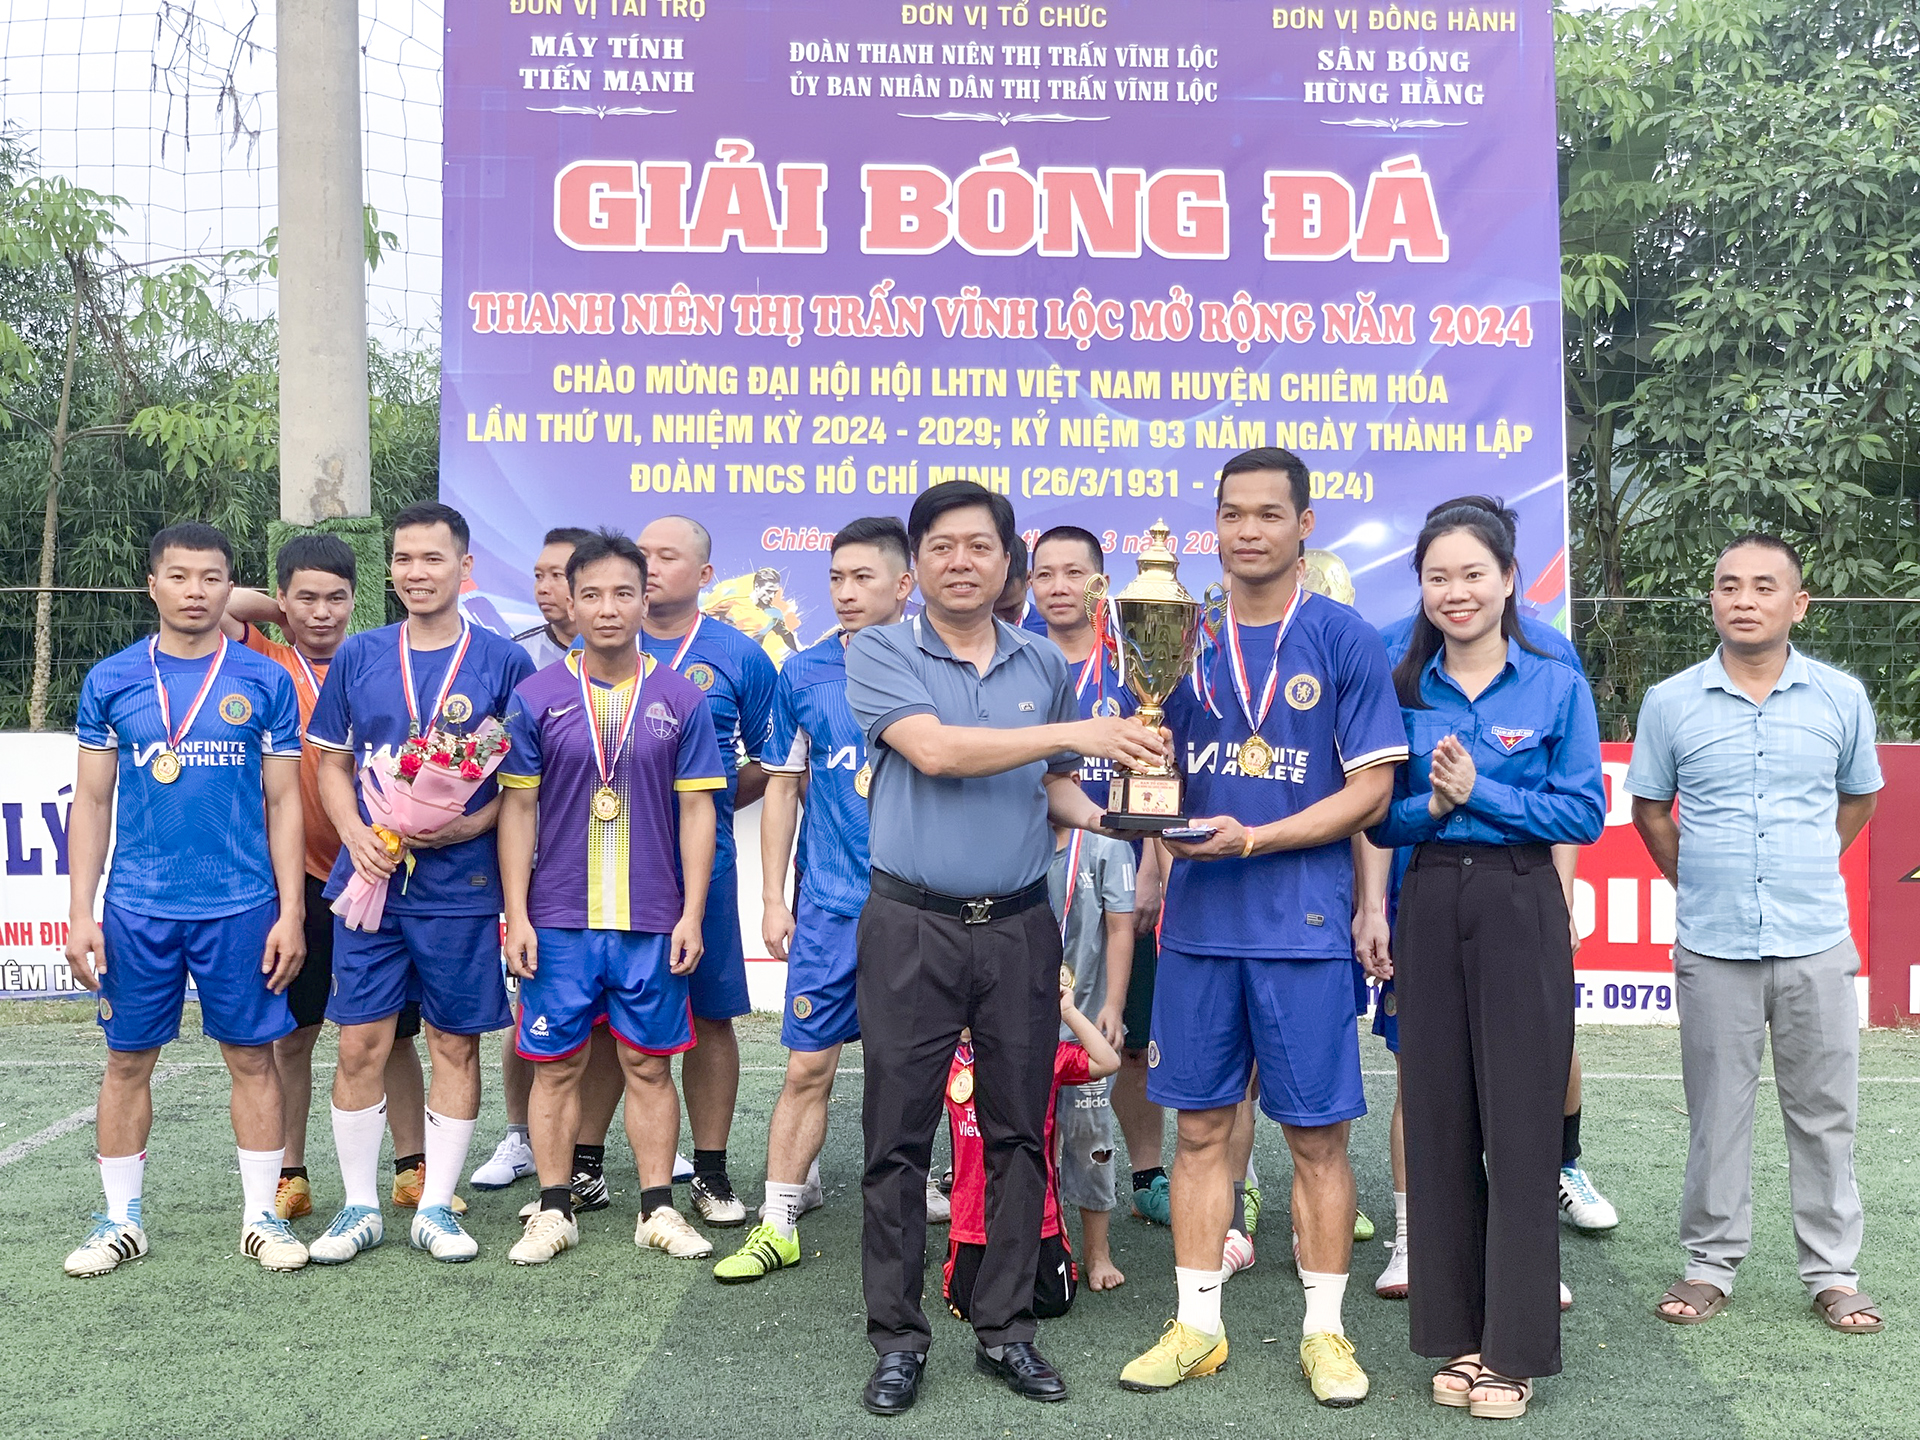 Thị trấn Vĩnh Lộc tổ chức Bế mạc giải bóng đá thanh niên mở rộng năm 2024